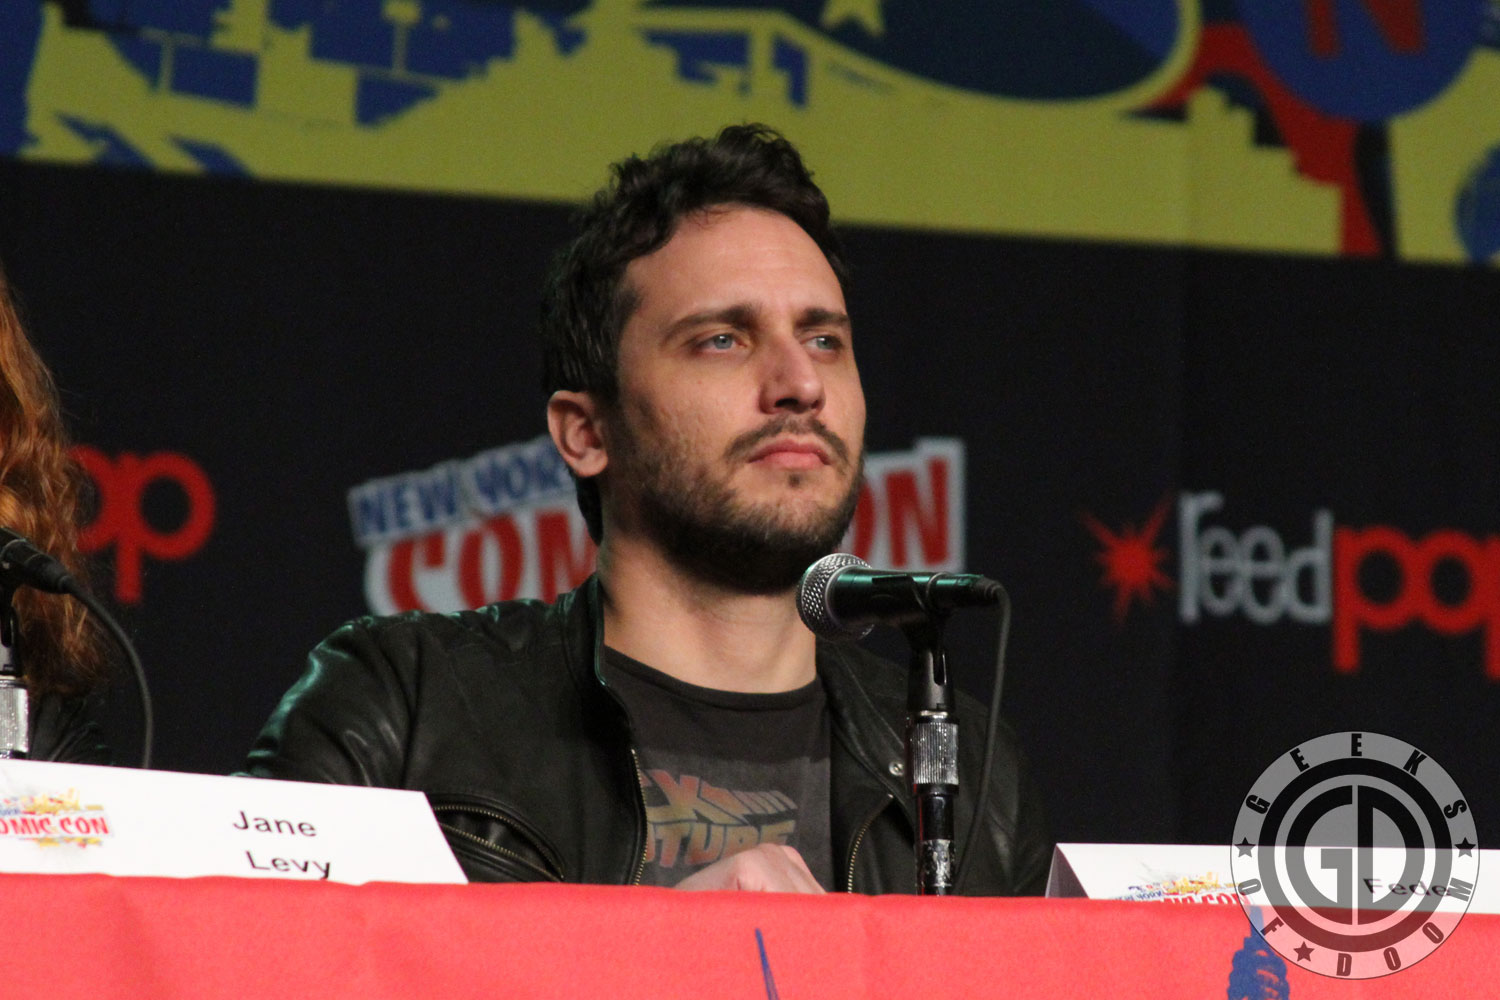 Fede Alvarez (NY ComicCon 2013, EvilDead Panel)